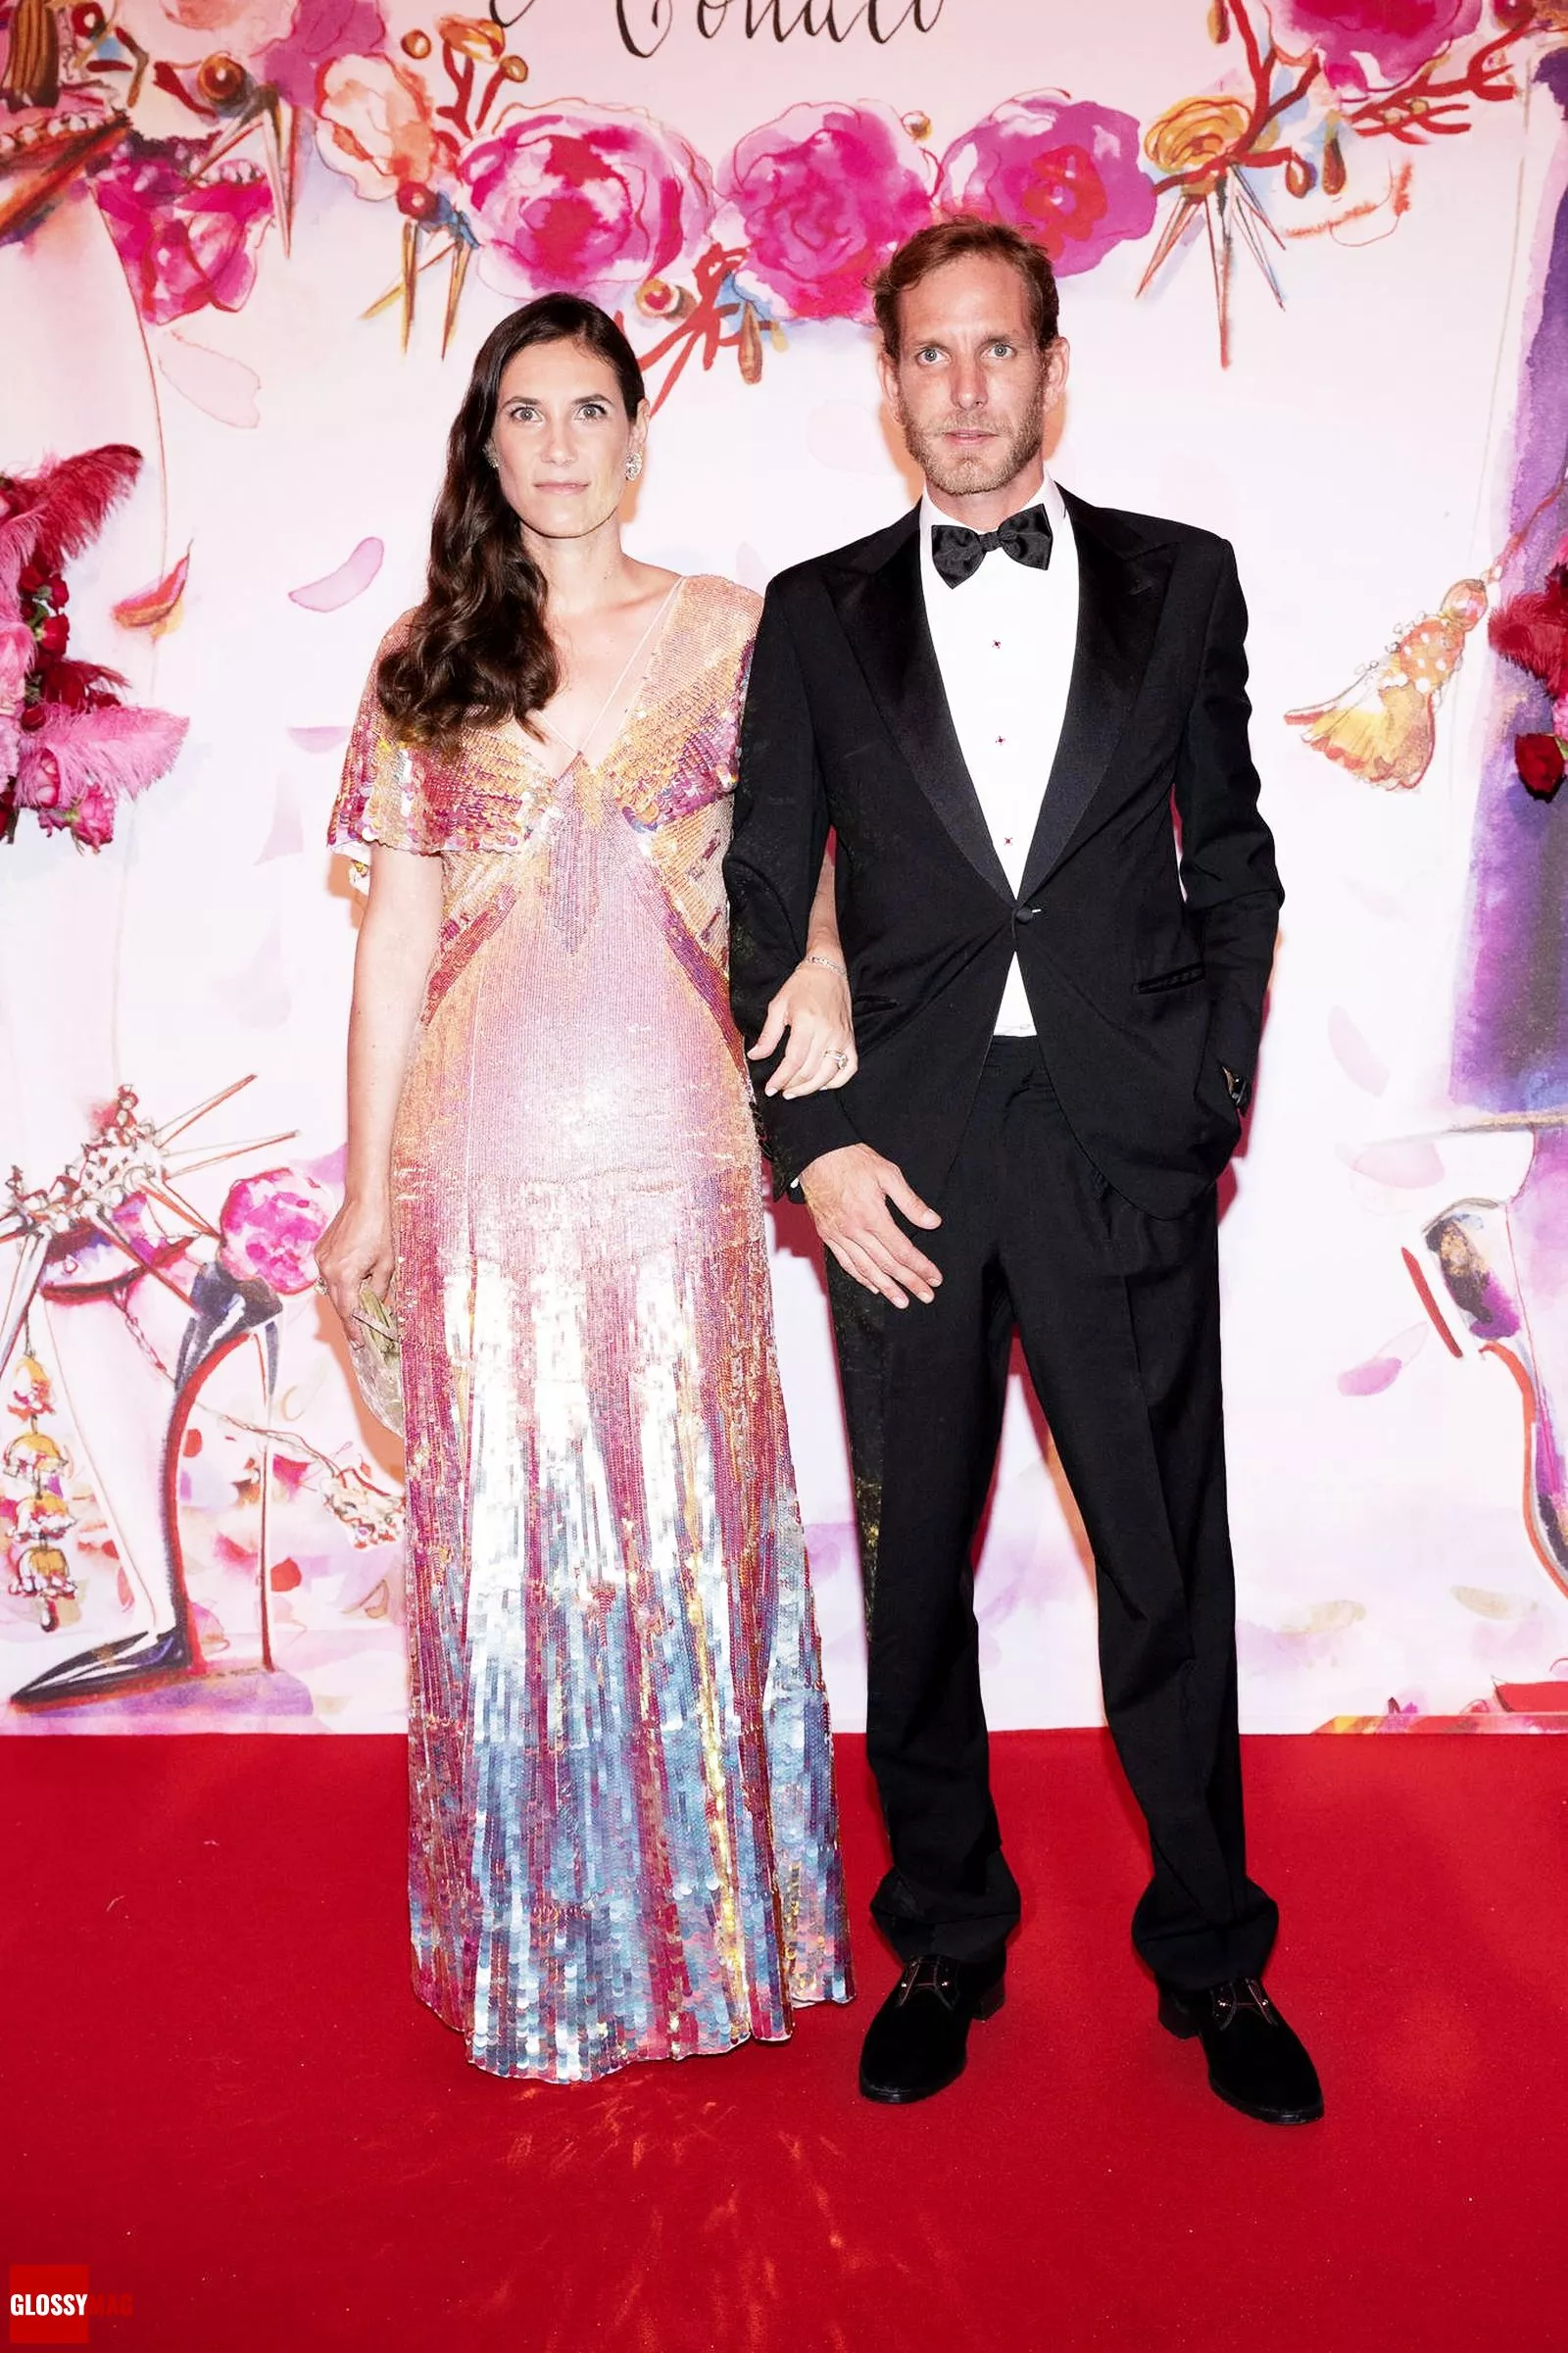 Андреа Альбер Пьер Казираги с женой Татьяной Санто-Доминго на благотворительном мероприятии Бал Роз 2022 в Монако, 8 июля 2022 г.